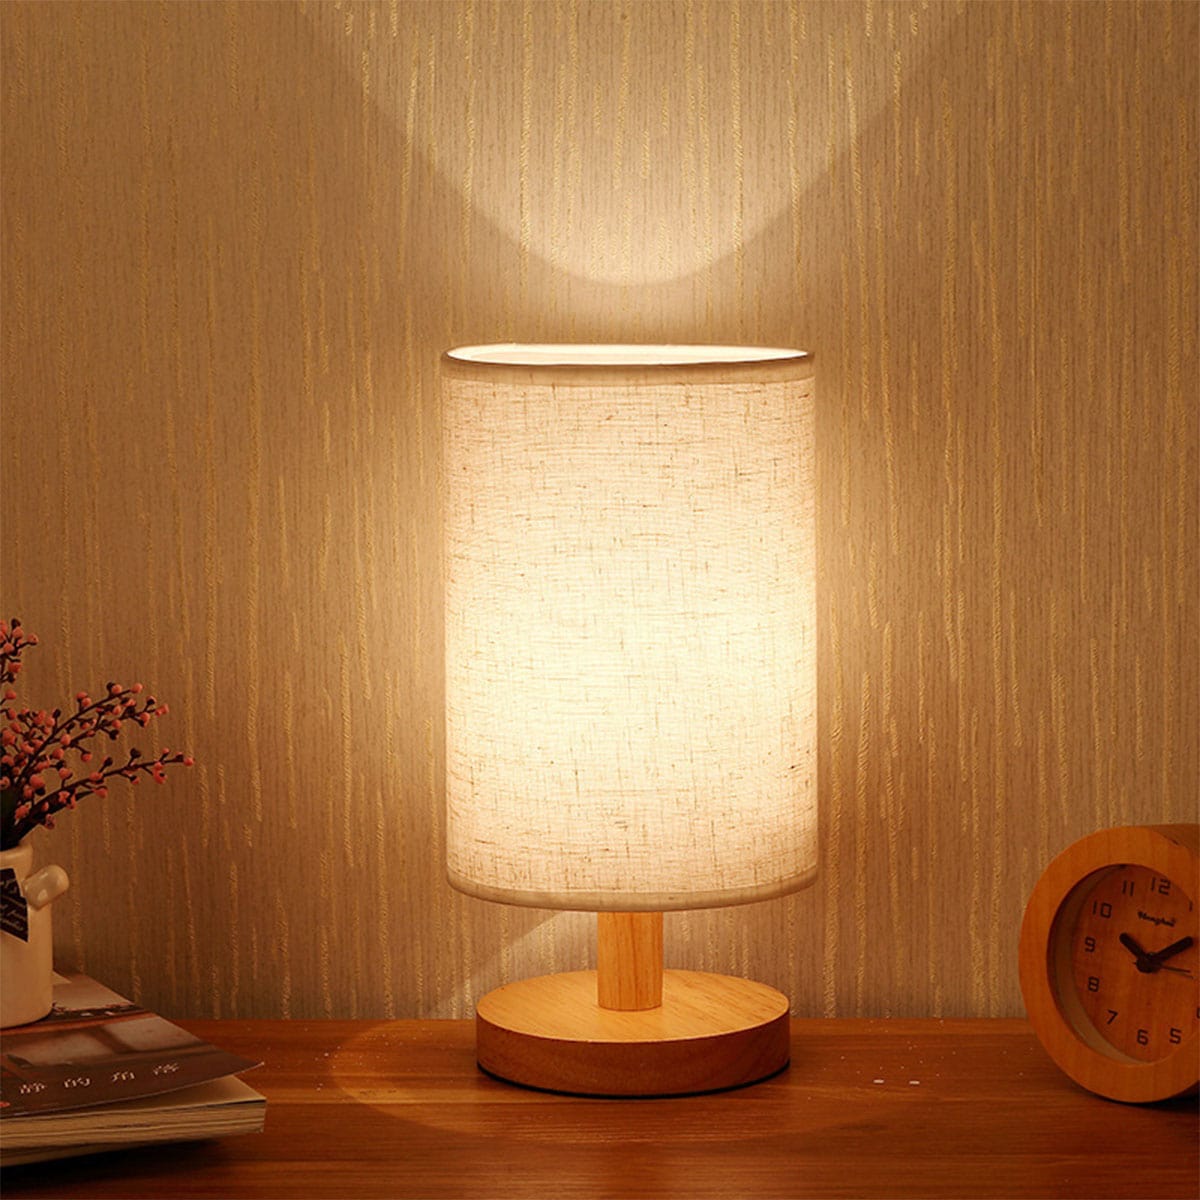 lampe de chevet bois scandinave – Ilodecor